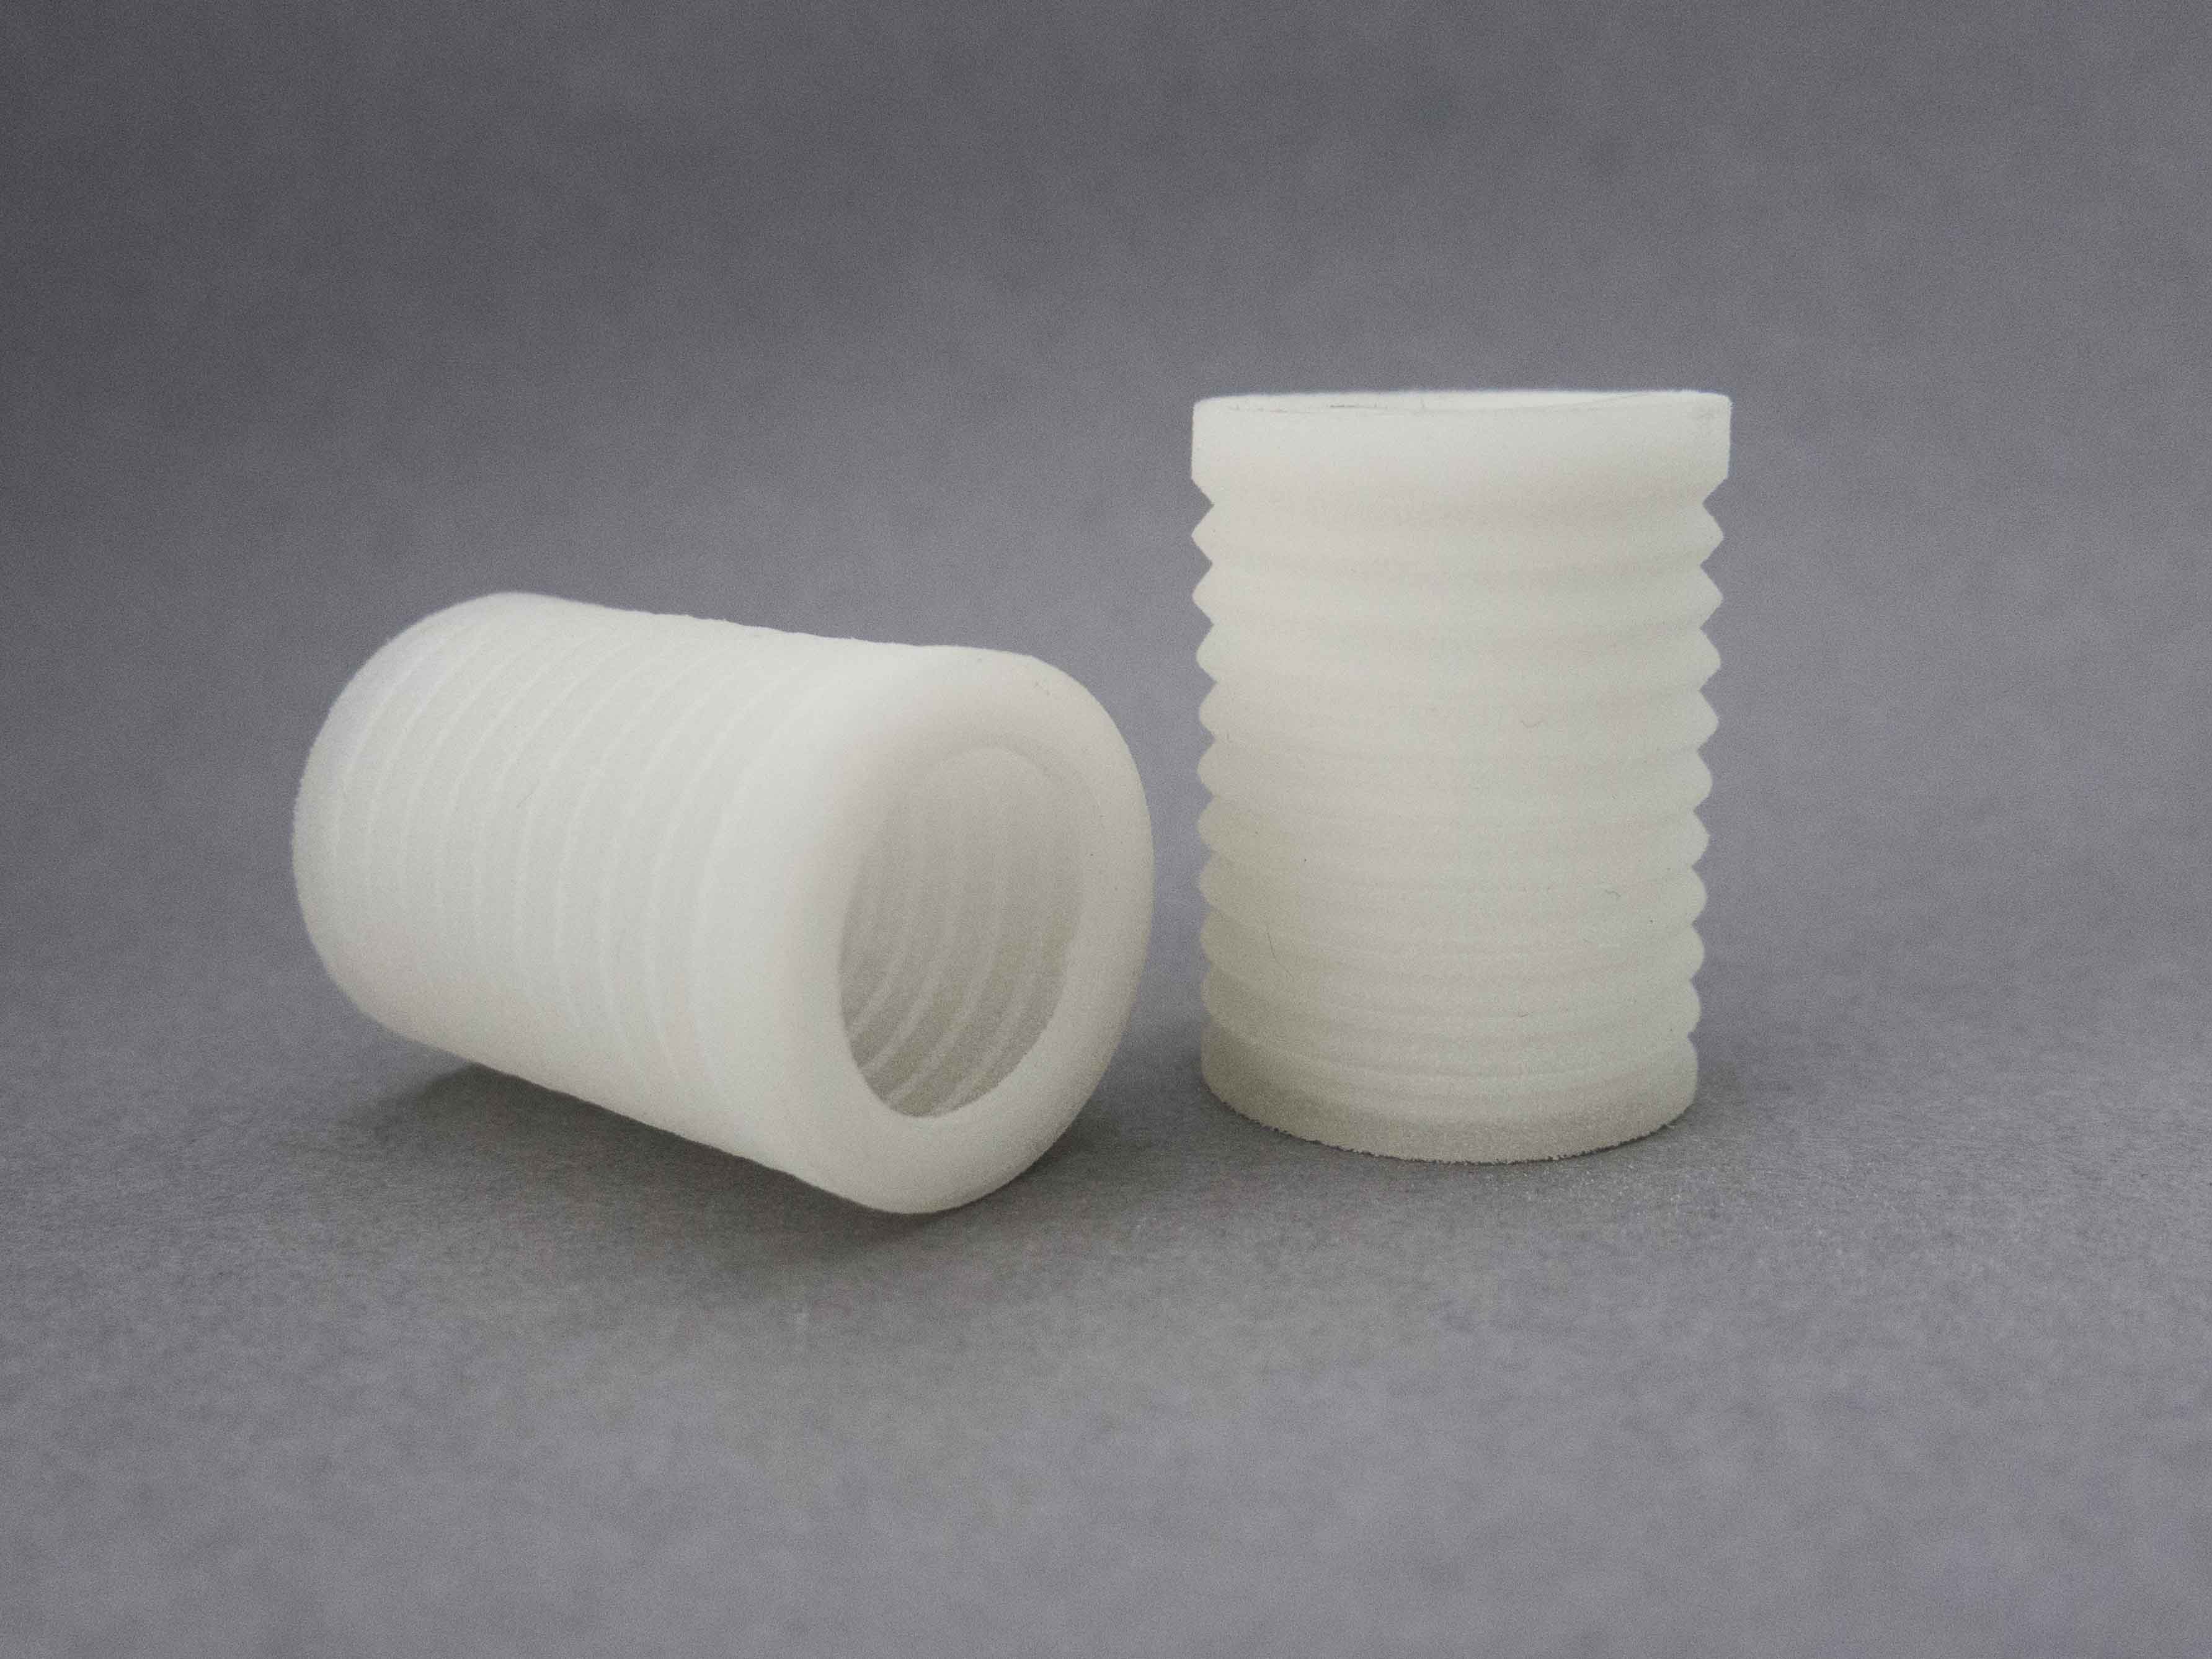 Flexible Plastic PEBA material for 3D printing